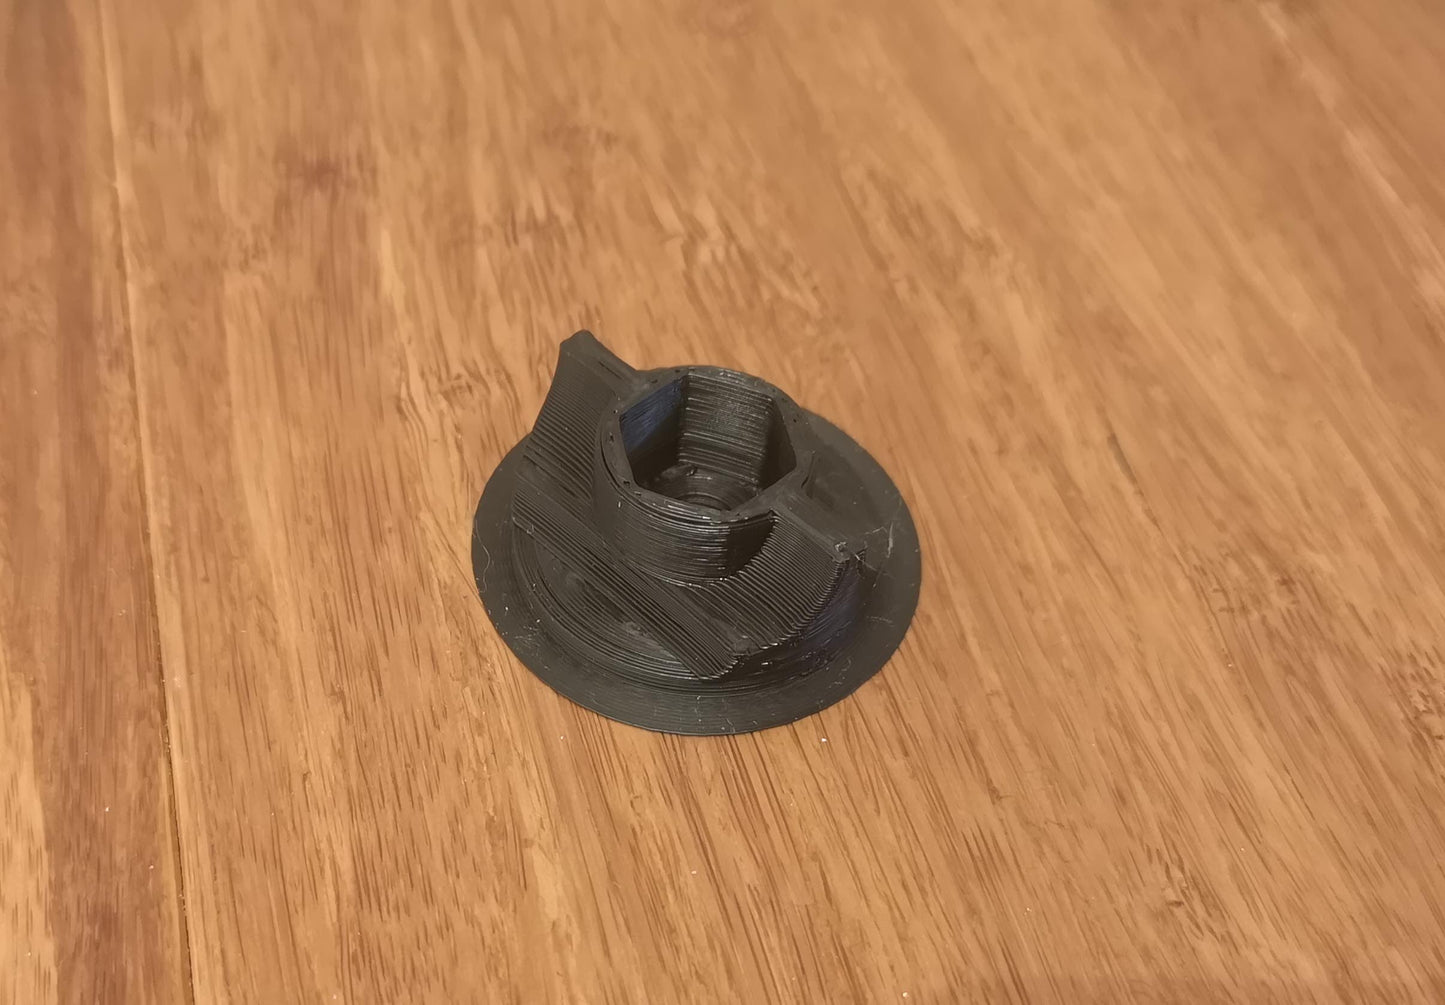 3D Printed Flat Lap v1.2- Basic Kit